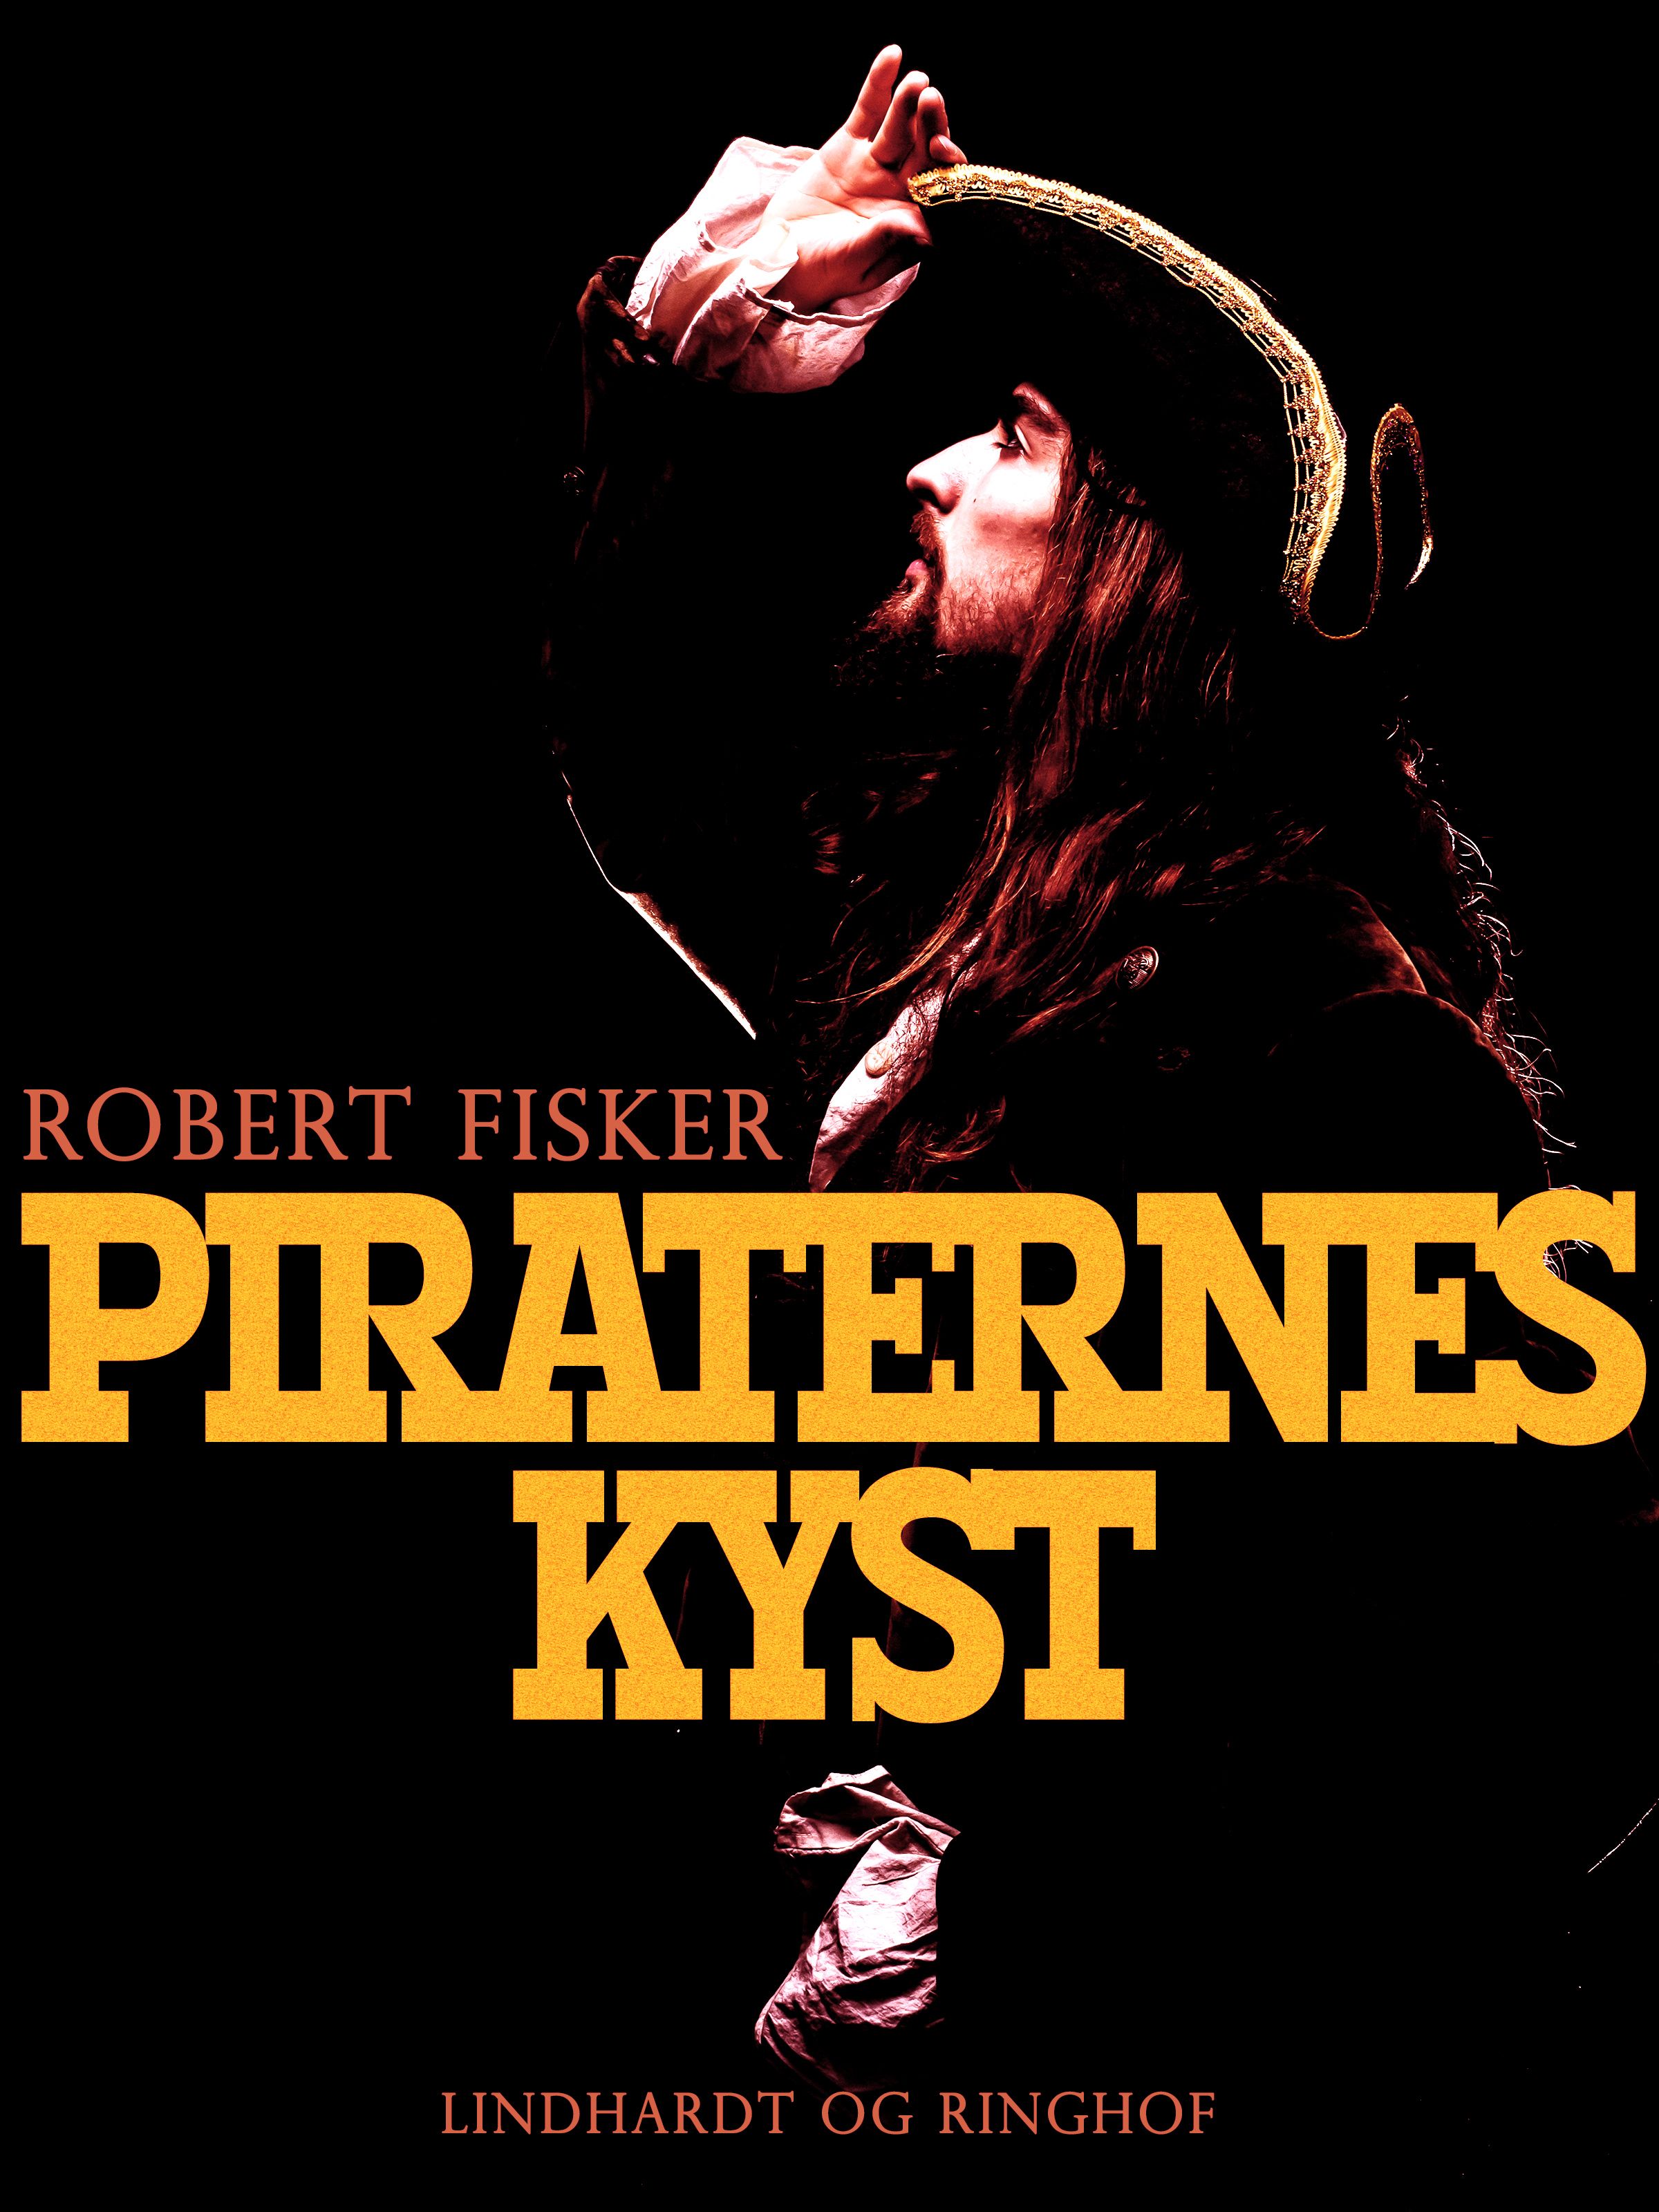 Piraternes kyst, e-bog af Robert Fisker